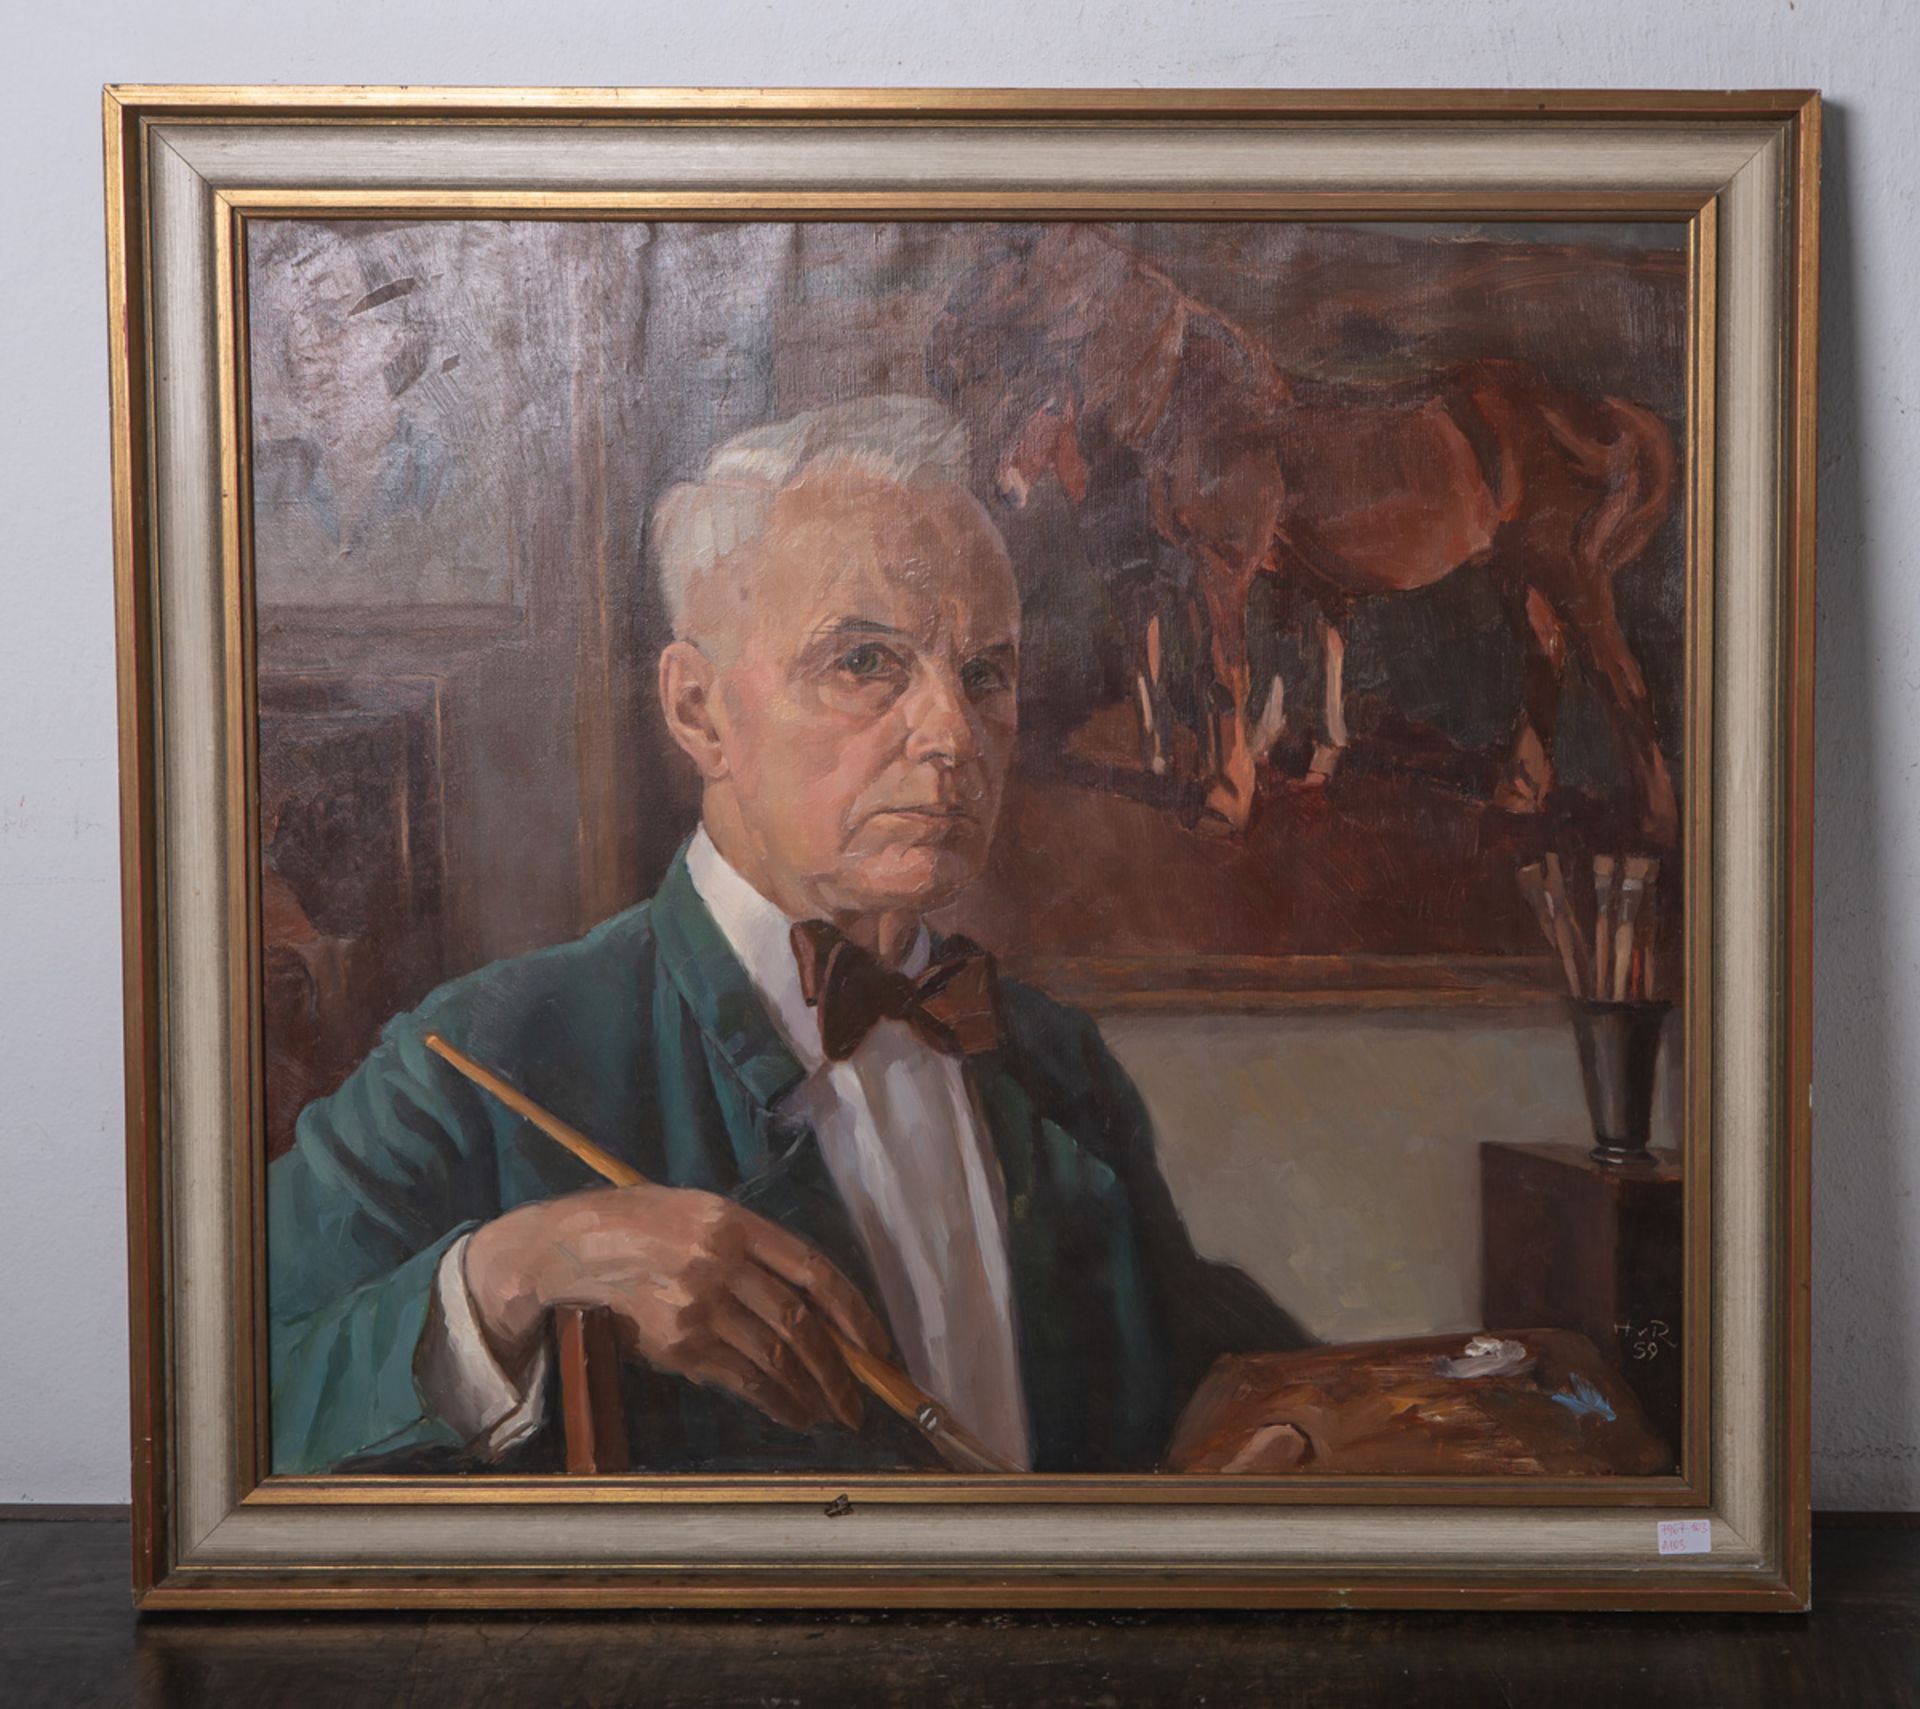 Rietschoten, Hermann van (1883 - 1962), Selbstportrait